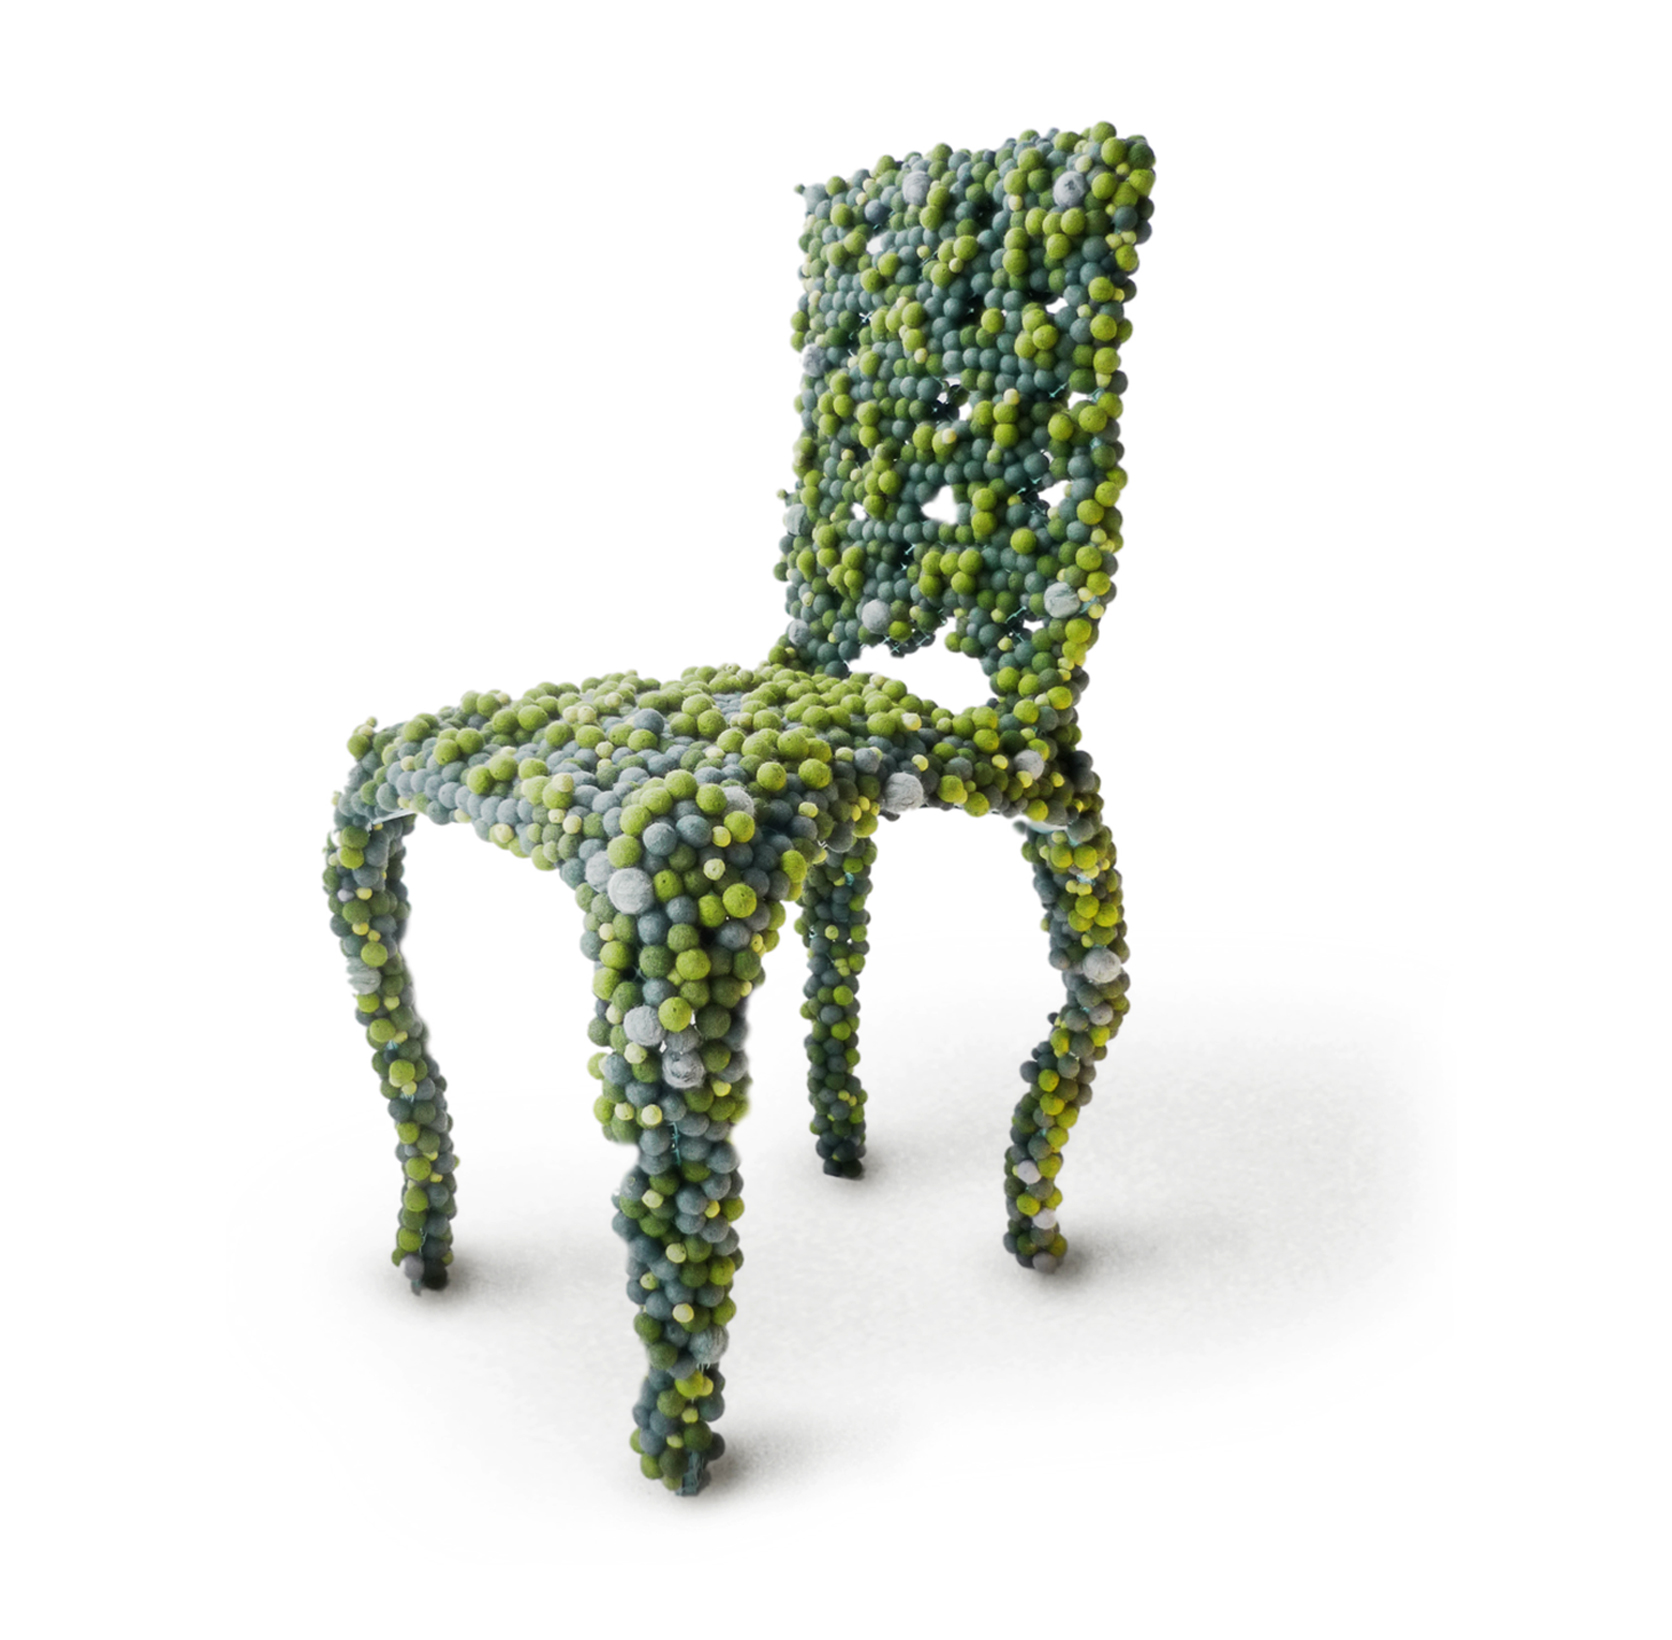 Креативные дизайнерские стулья